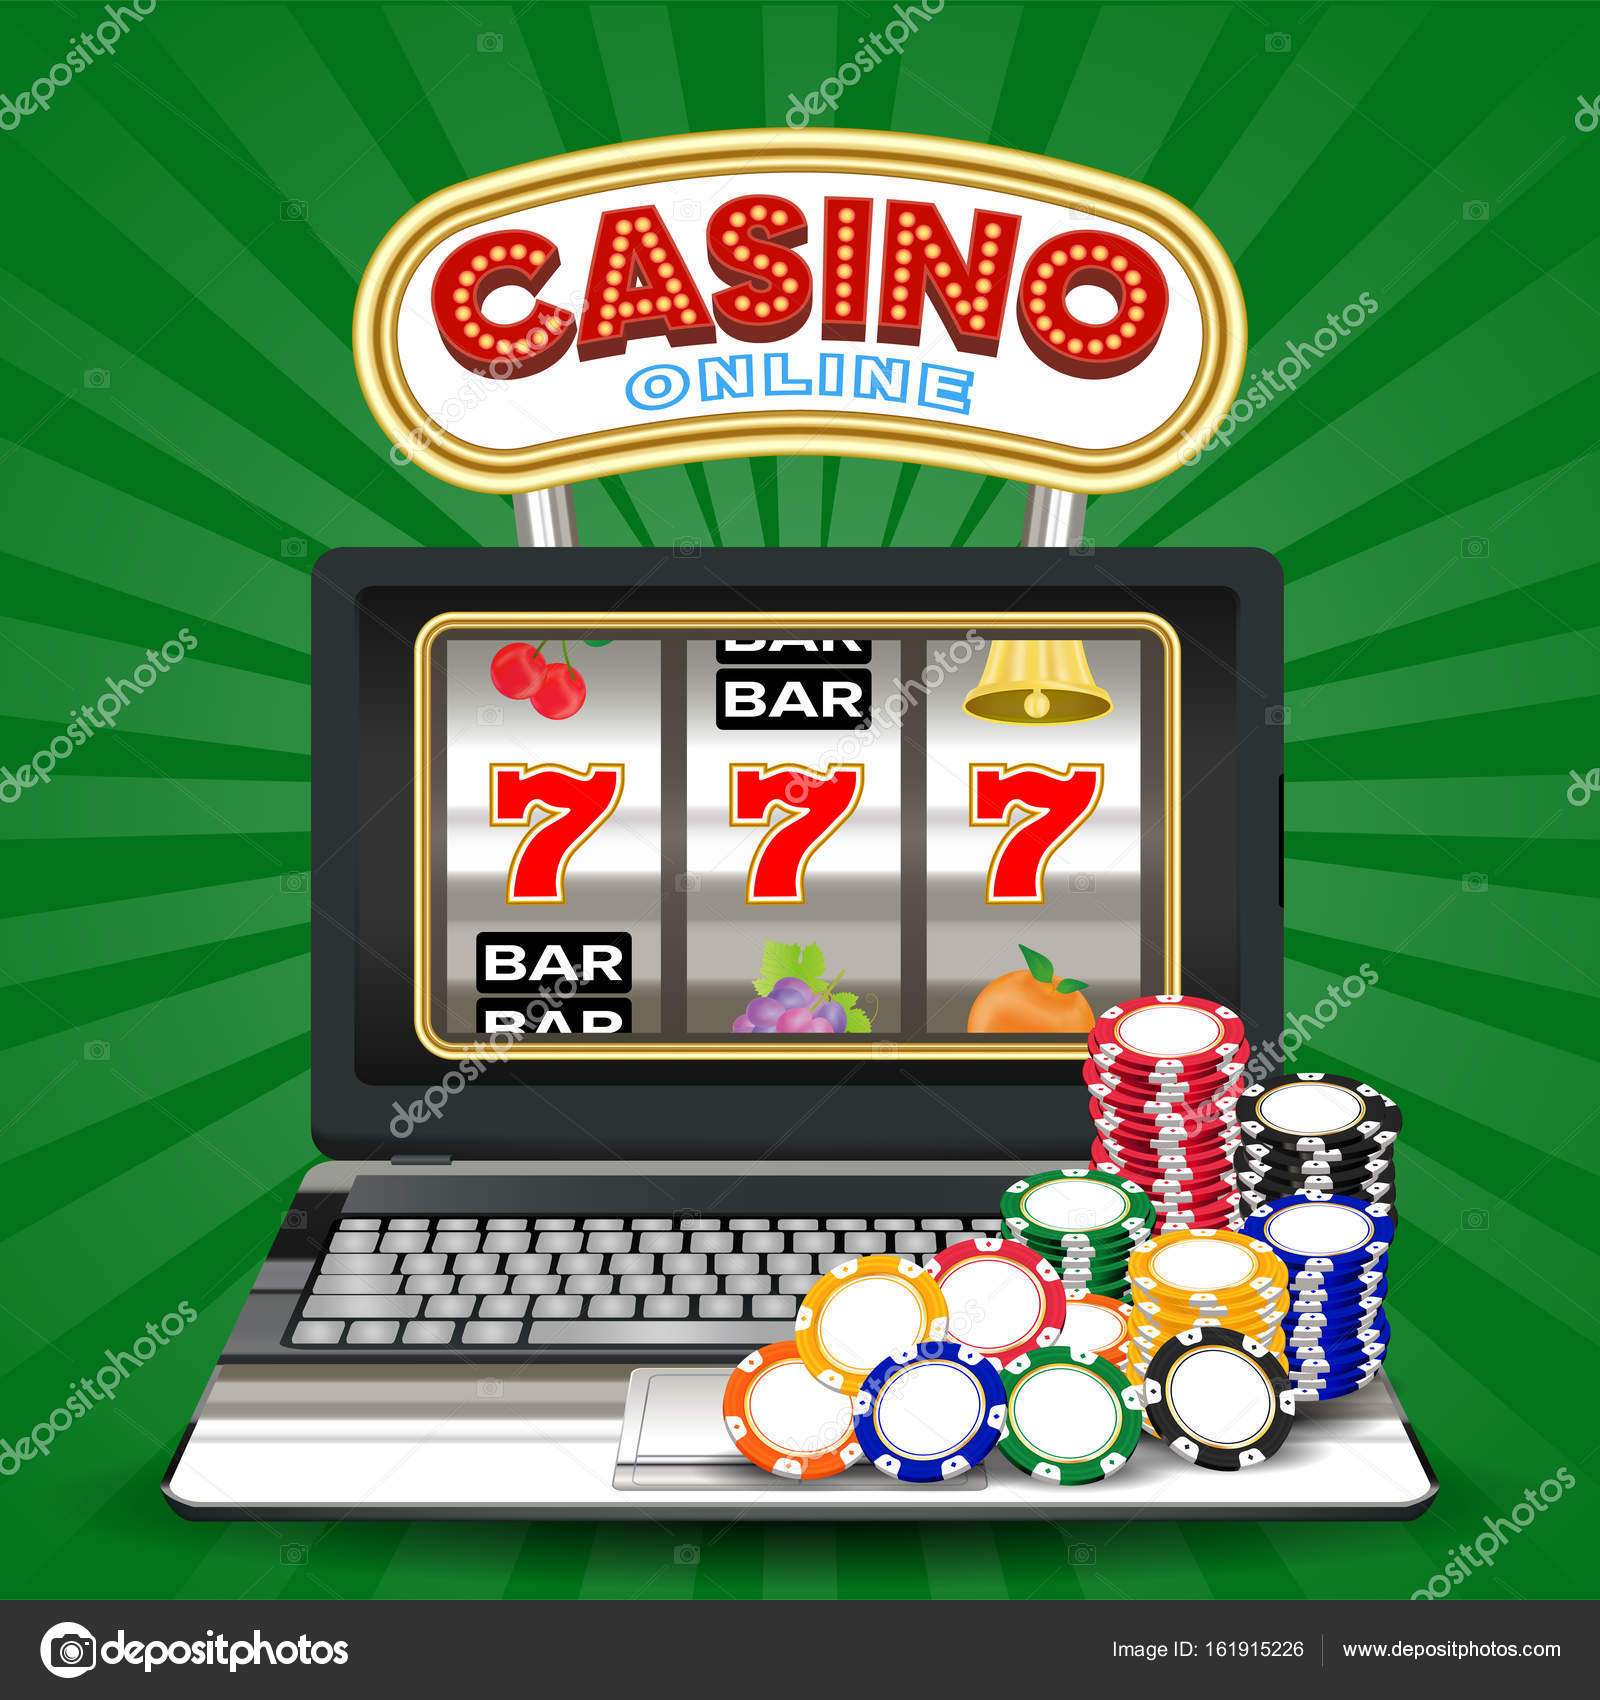 Играть онлайн в игровые автоматы на деньги с выводом денег карту сбербанка